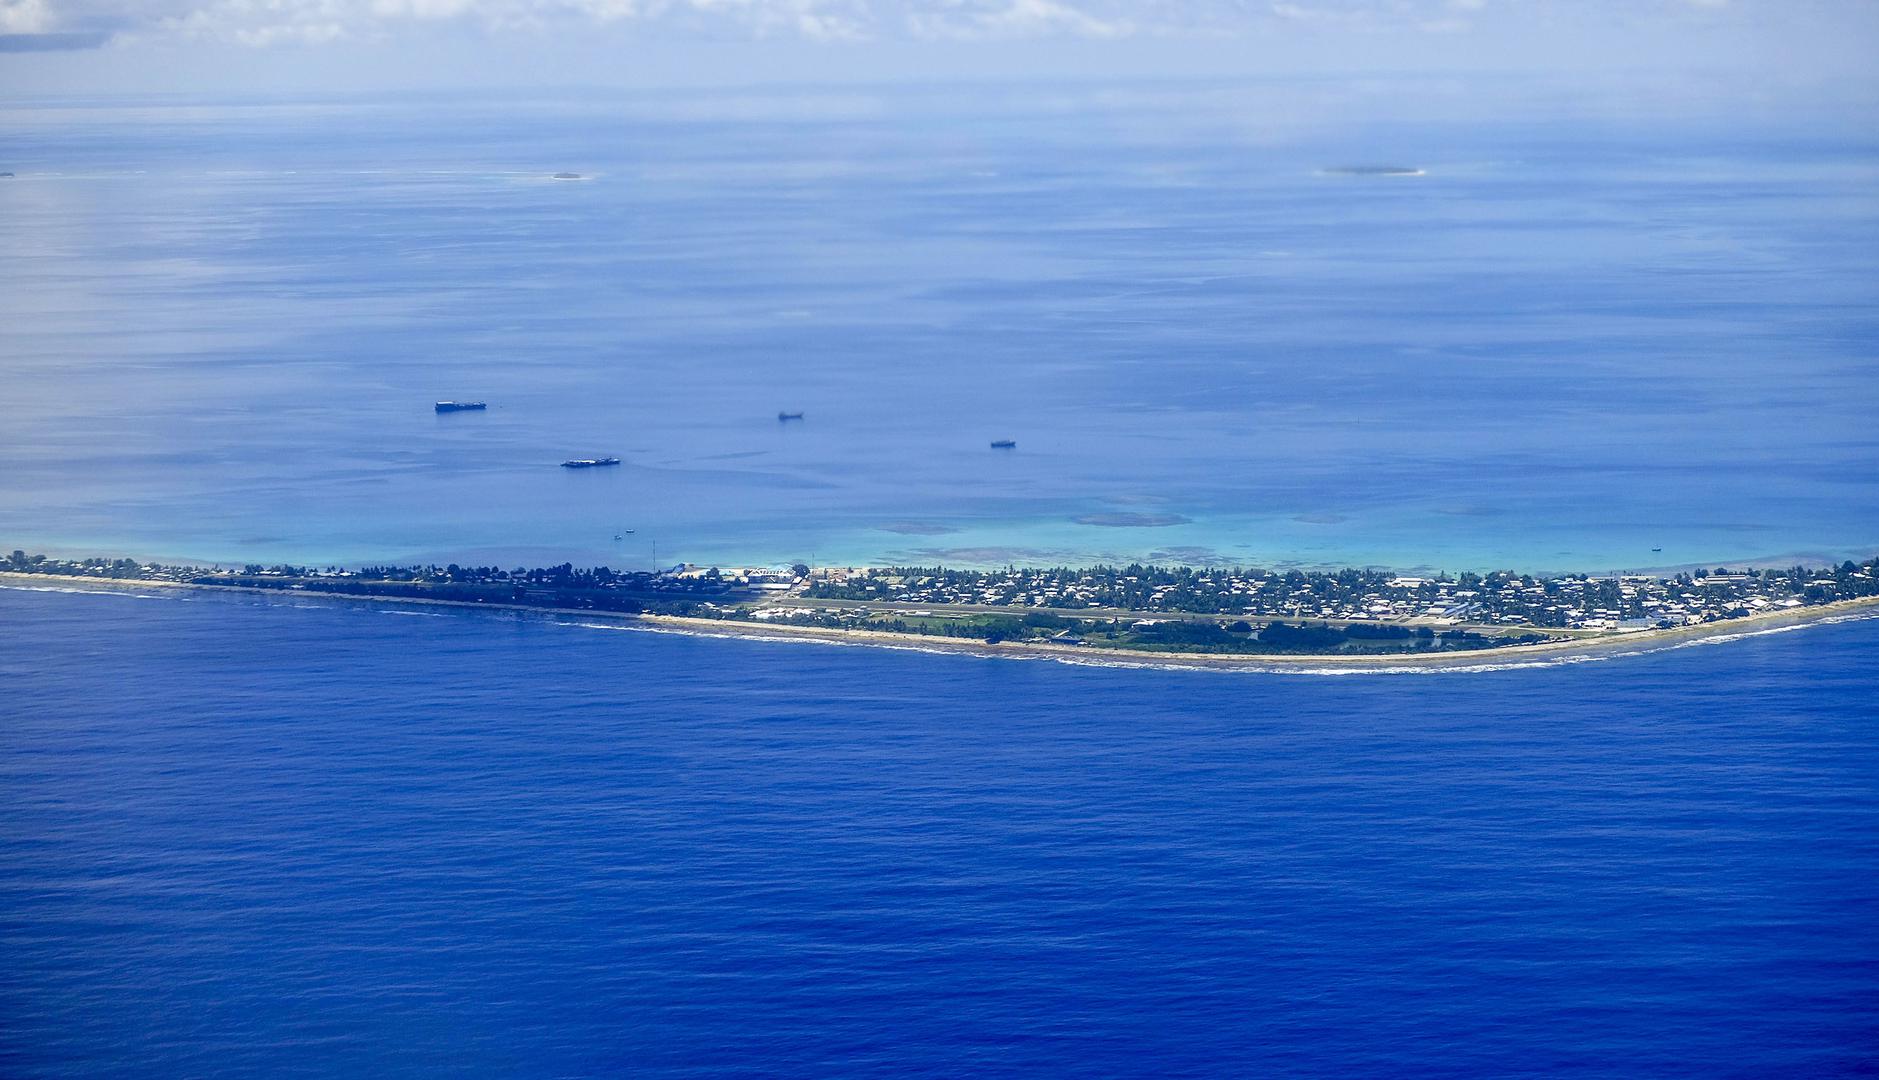 Posljednja je zemlja na popisu Tuvalu, otočna država također smještena u Tihom oceanu. U njoj živi samo 11 tisuća ljudi, i čini se da bi joj manje razvijena infrastruktura i nedostatak prirodnih resursa činio manjom metom za ratovanje.